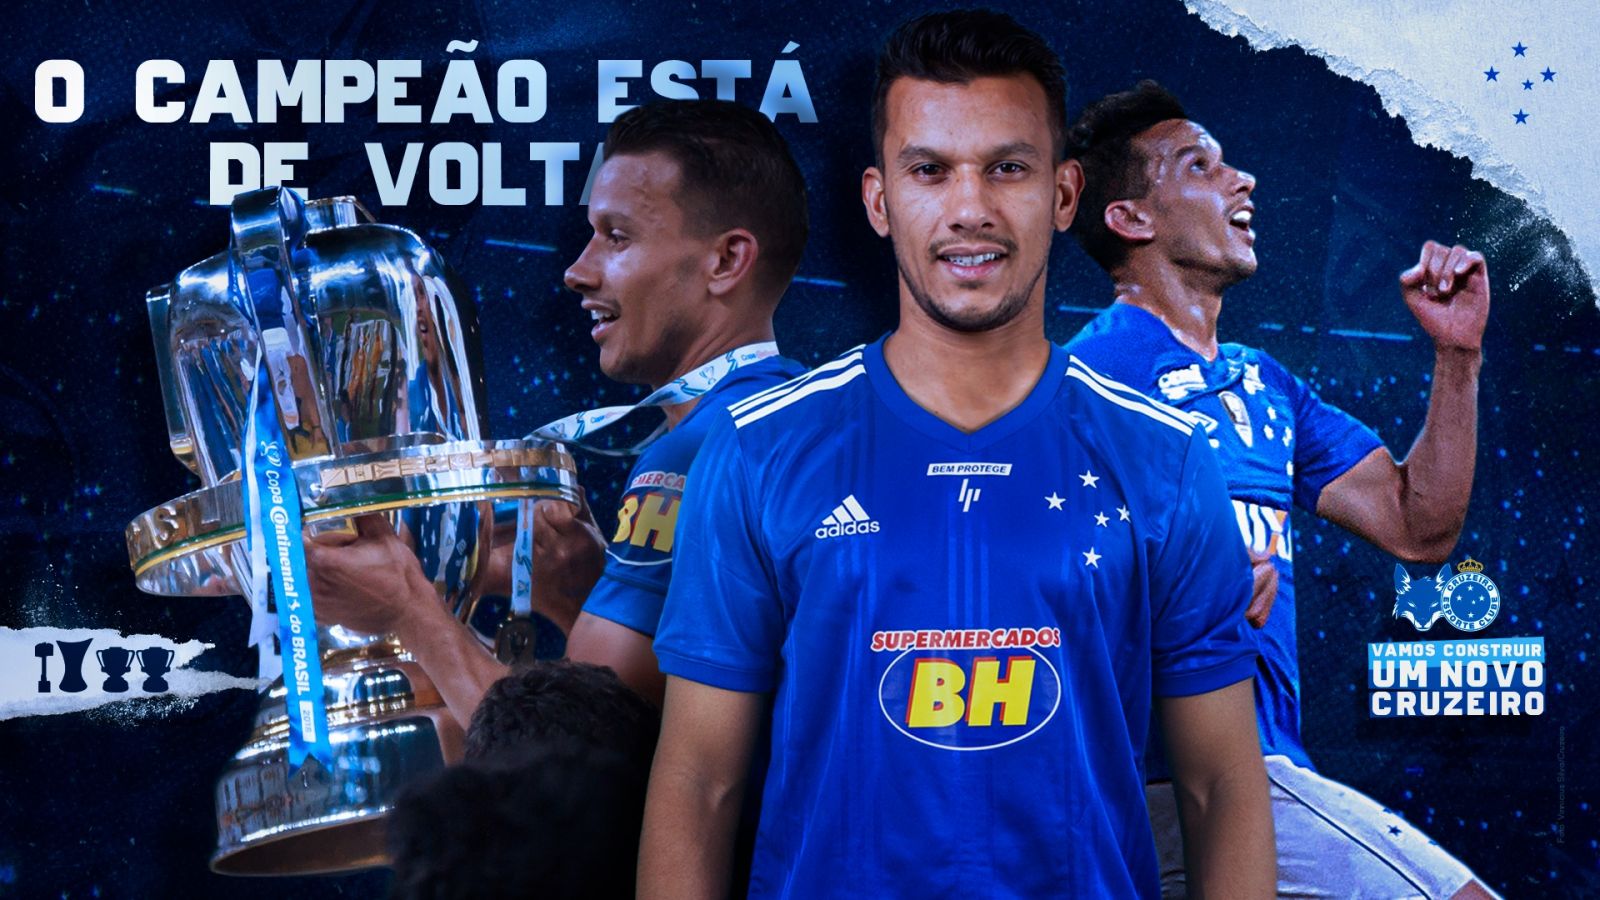 Multicampeão com a camisa celeste, Henrique está de volta para ajudar na construção de um novo Cruzeiro